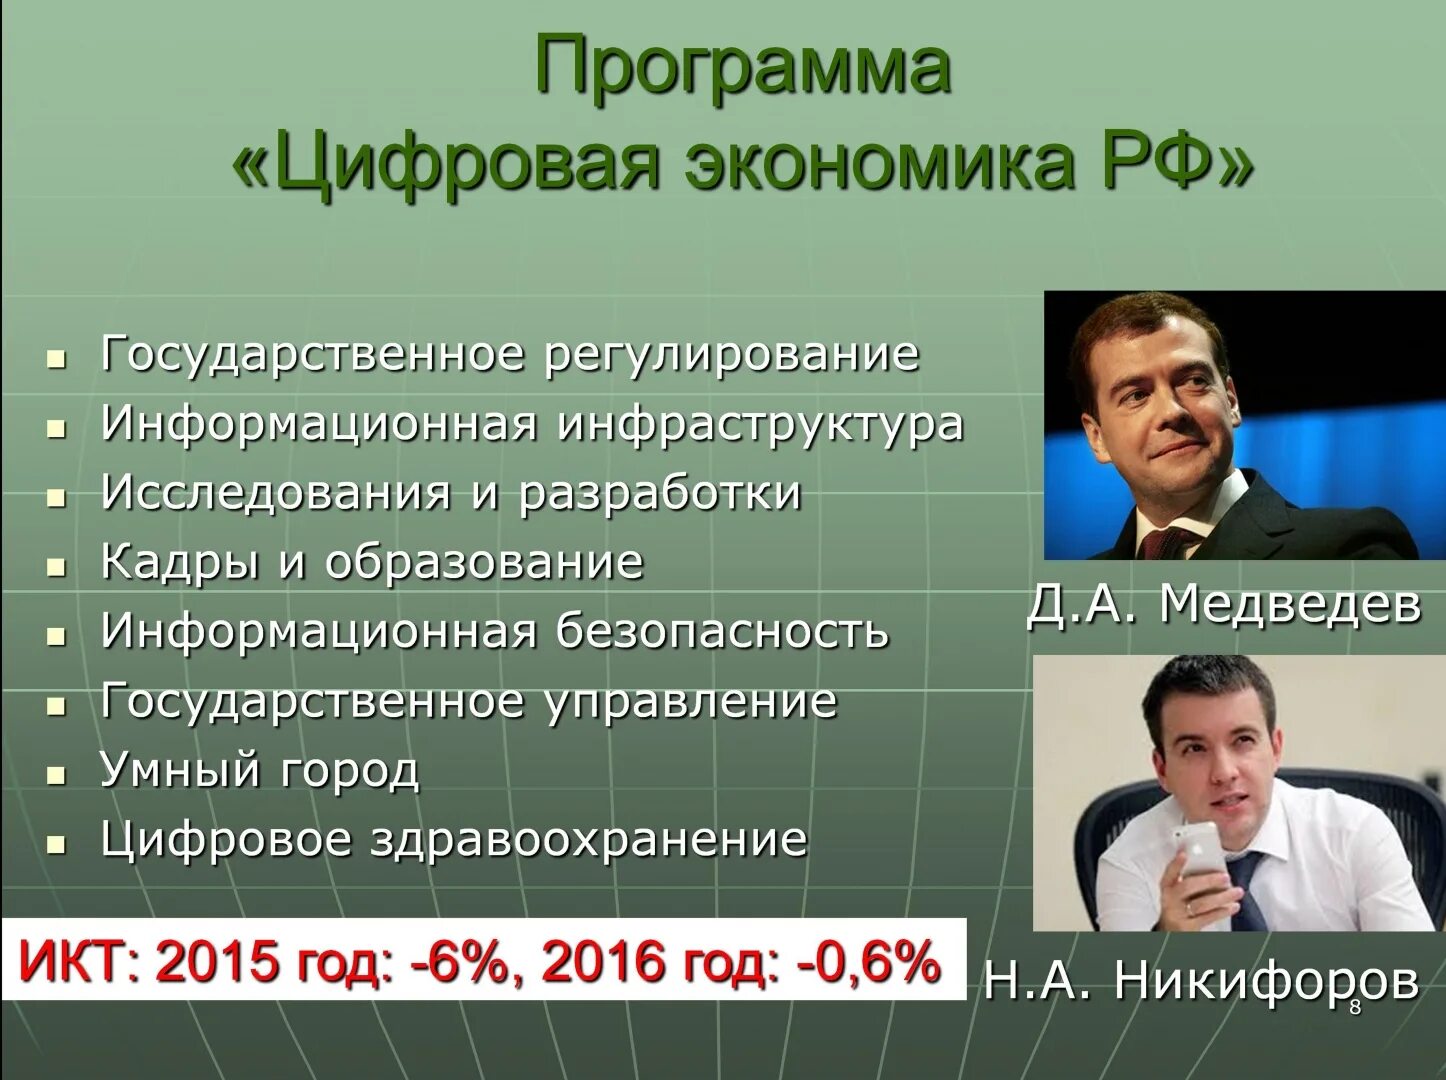 Экономика россии мнение. Цифровизация и экономическая безопасность. Известные лица в экономике России.